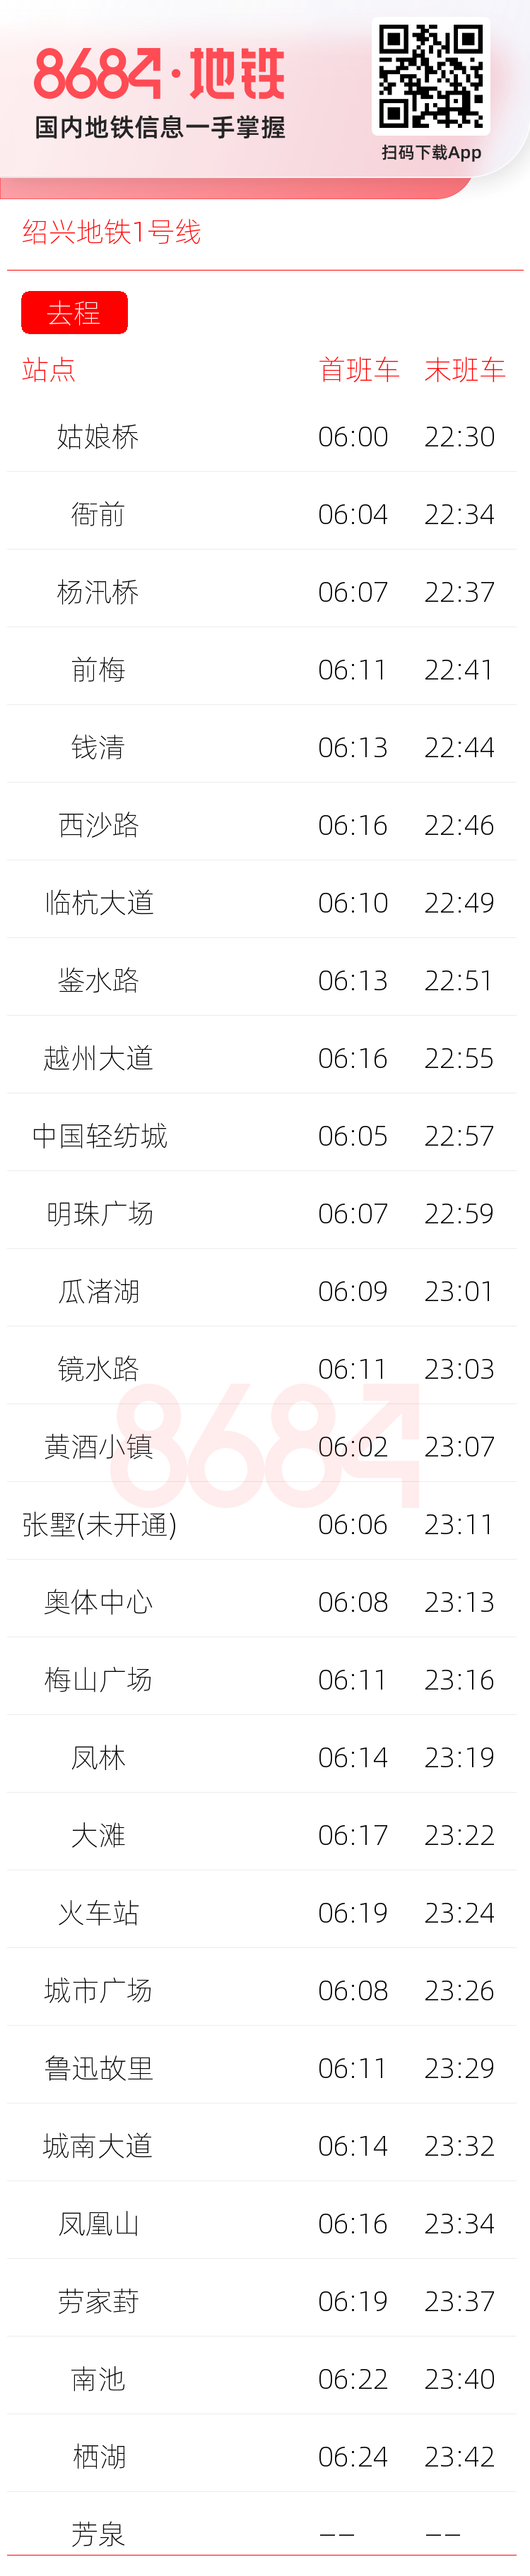 绍兴地铁1号线运营时间表